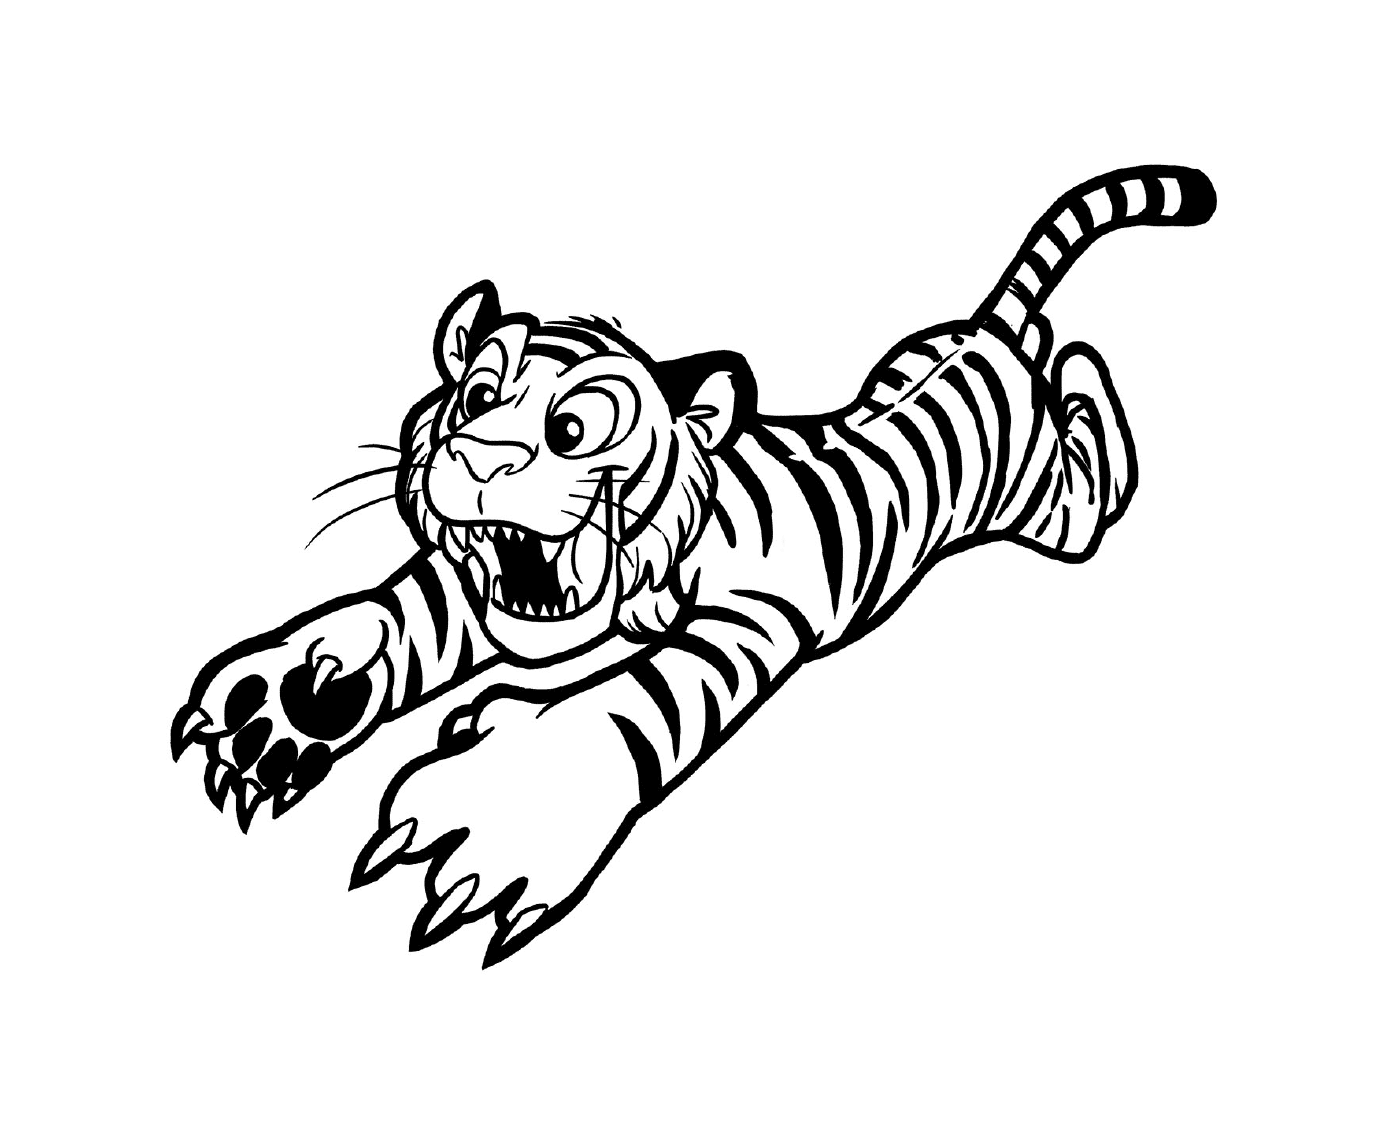   Un tigre en pleine action 